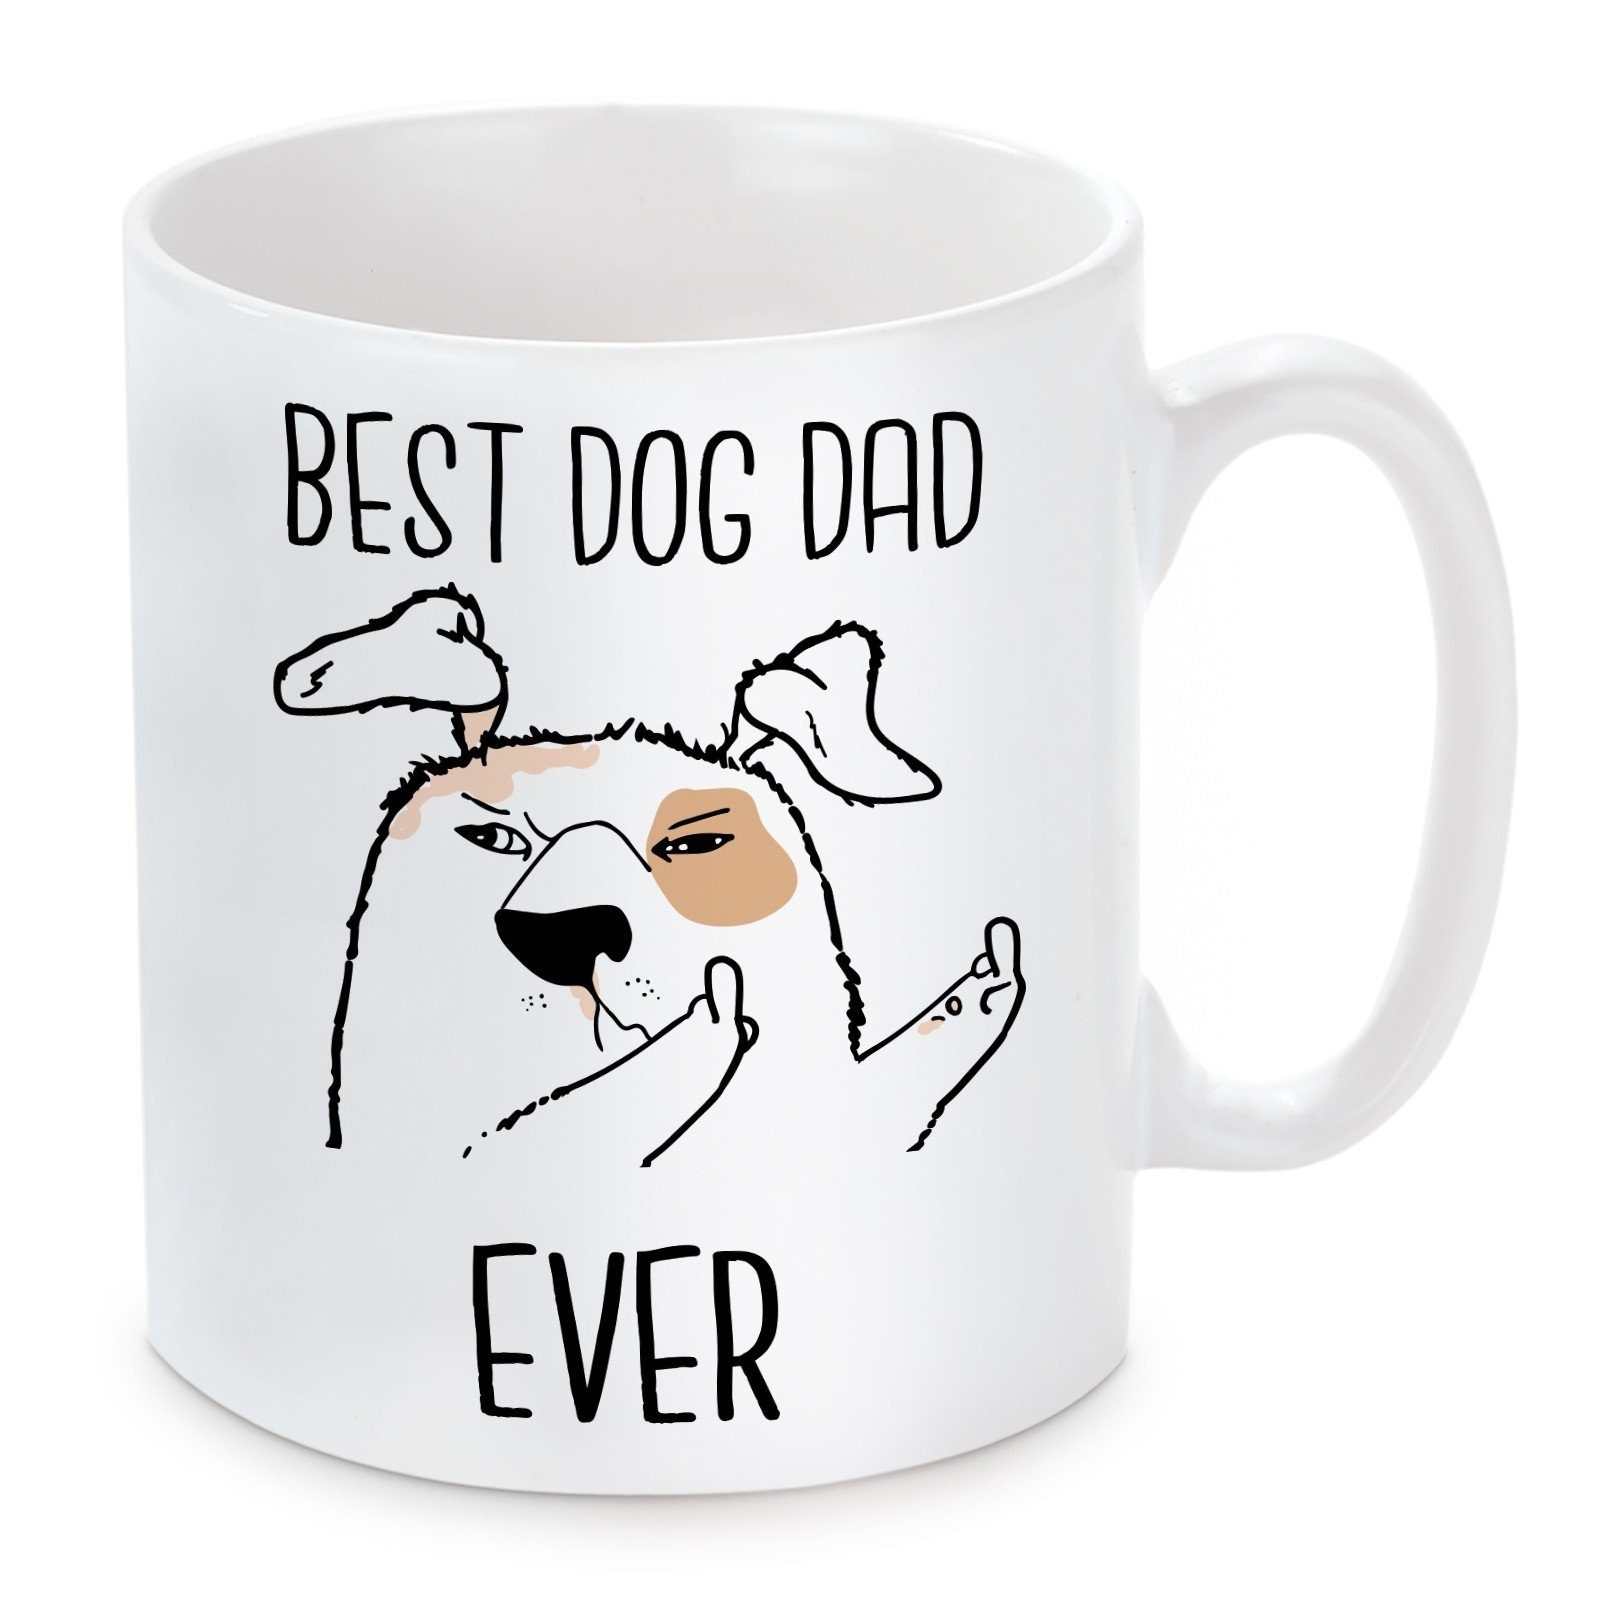 Herzbotschaft Tasse Ever., Best Kaffeebecher mikrowellengeeignet Dad Motiv Keramik, spülmaschinenfest Dog mit und Kaffeetasse